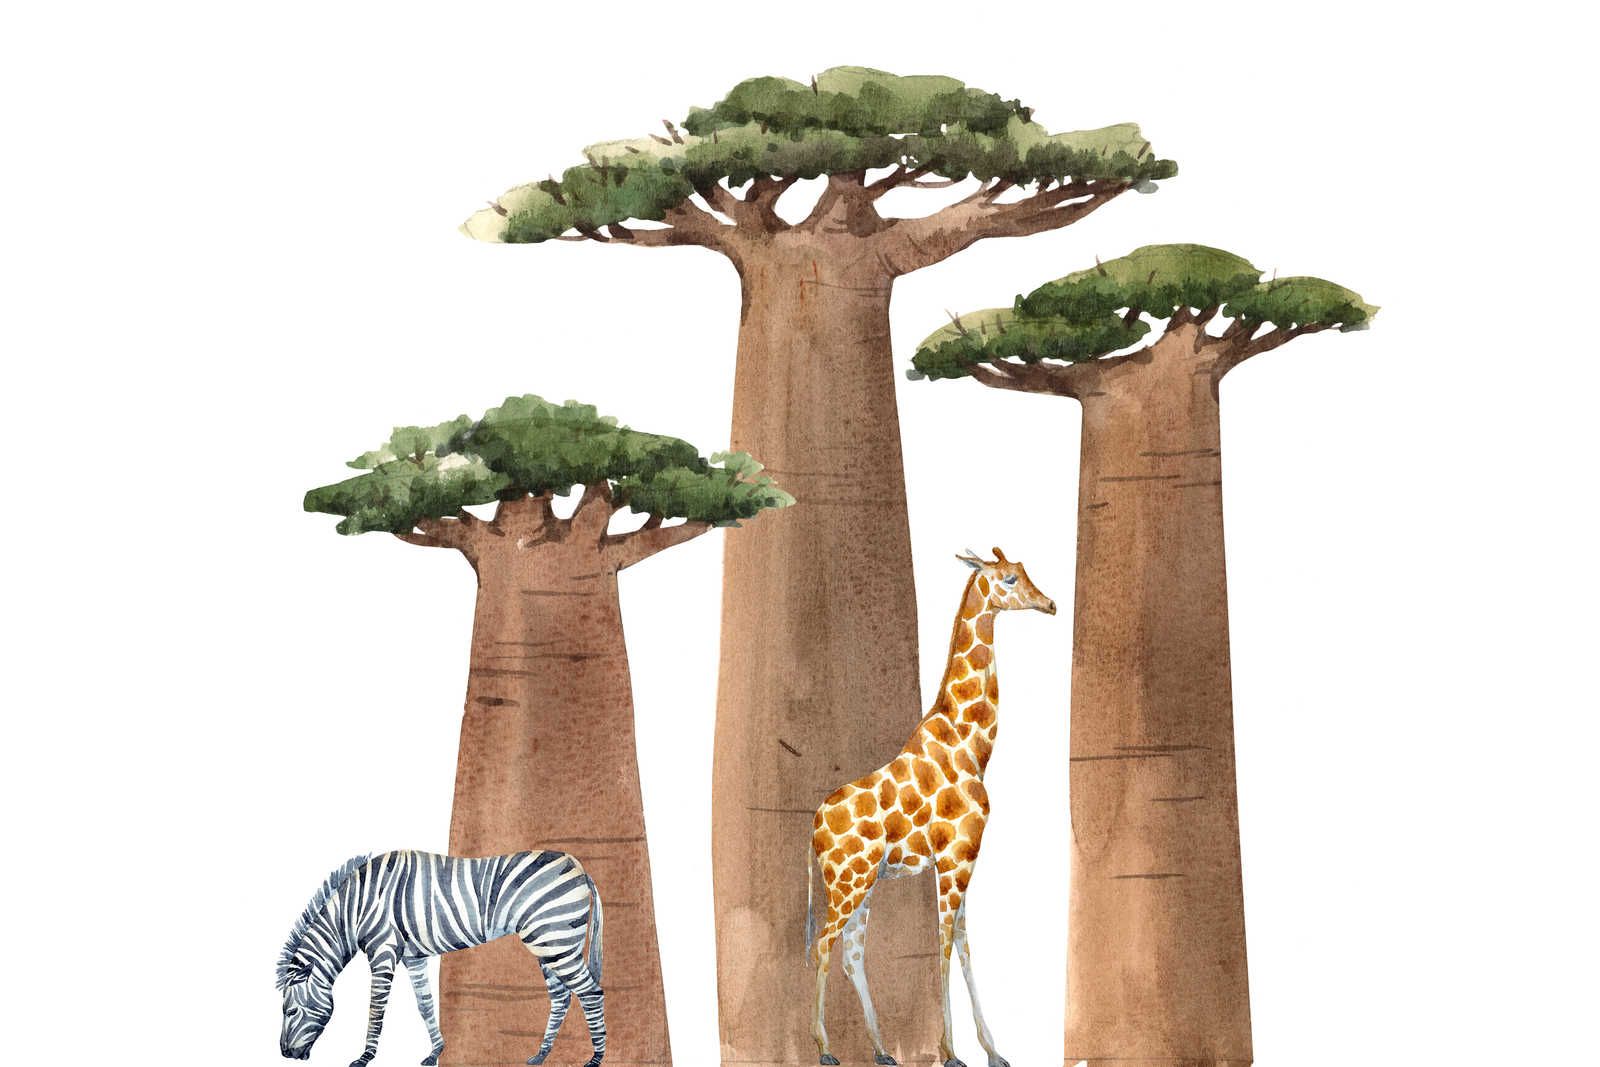             Leinwand Savanne mit Giraffe und Zebra – 120 cm x 80 cm
        